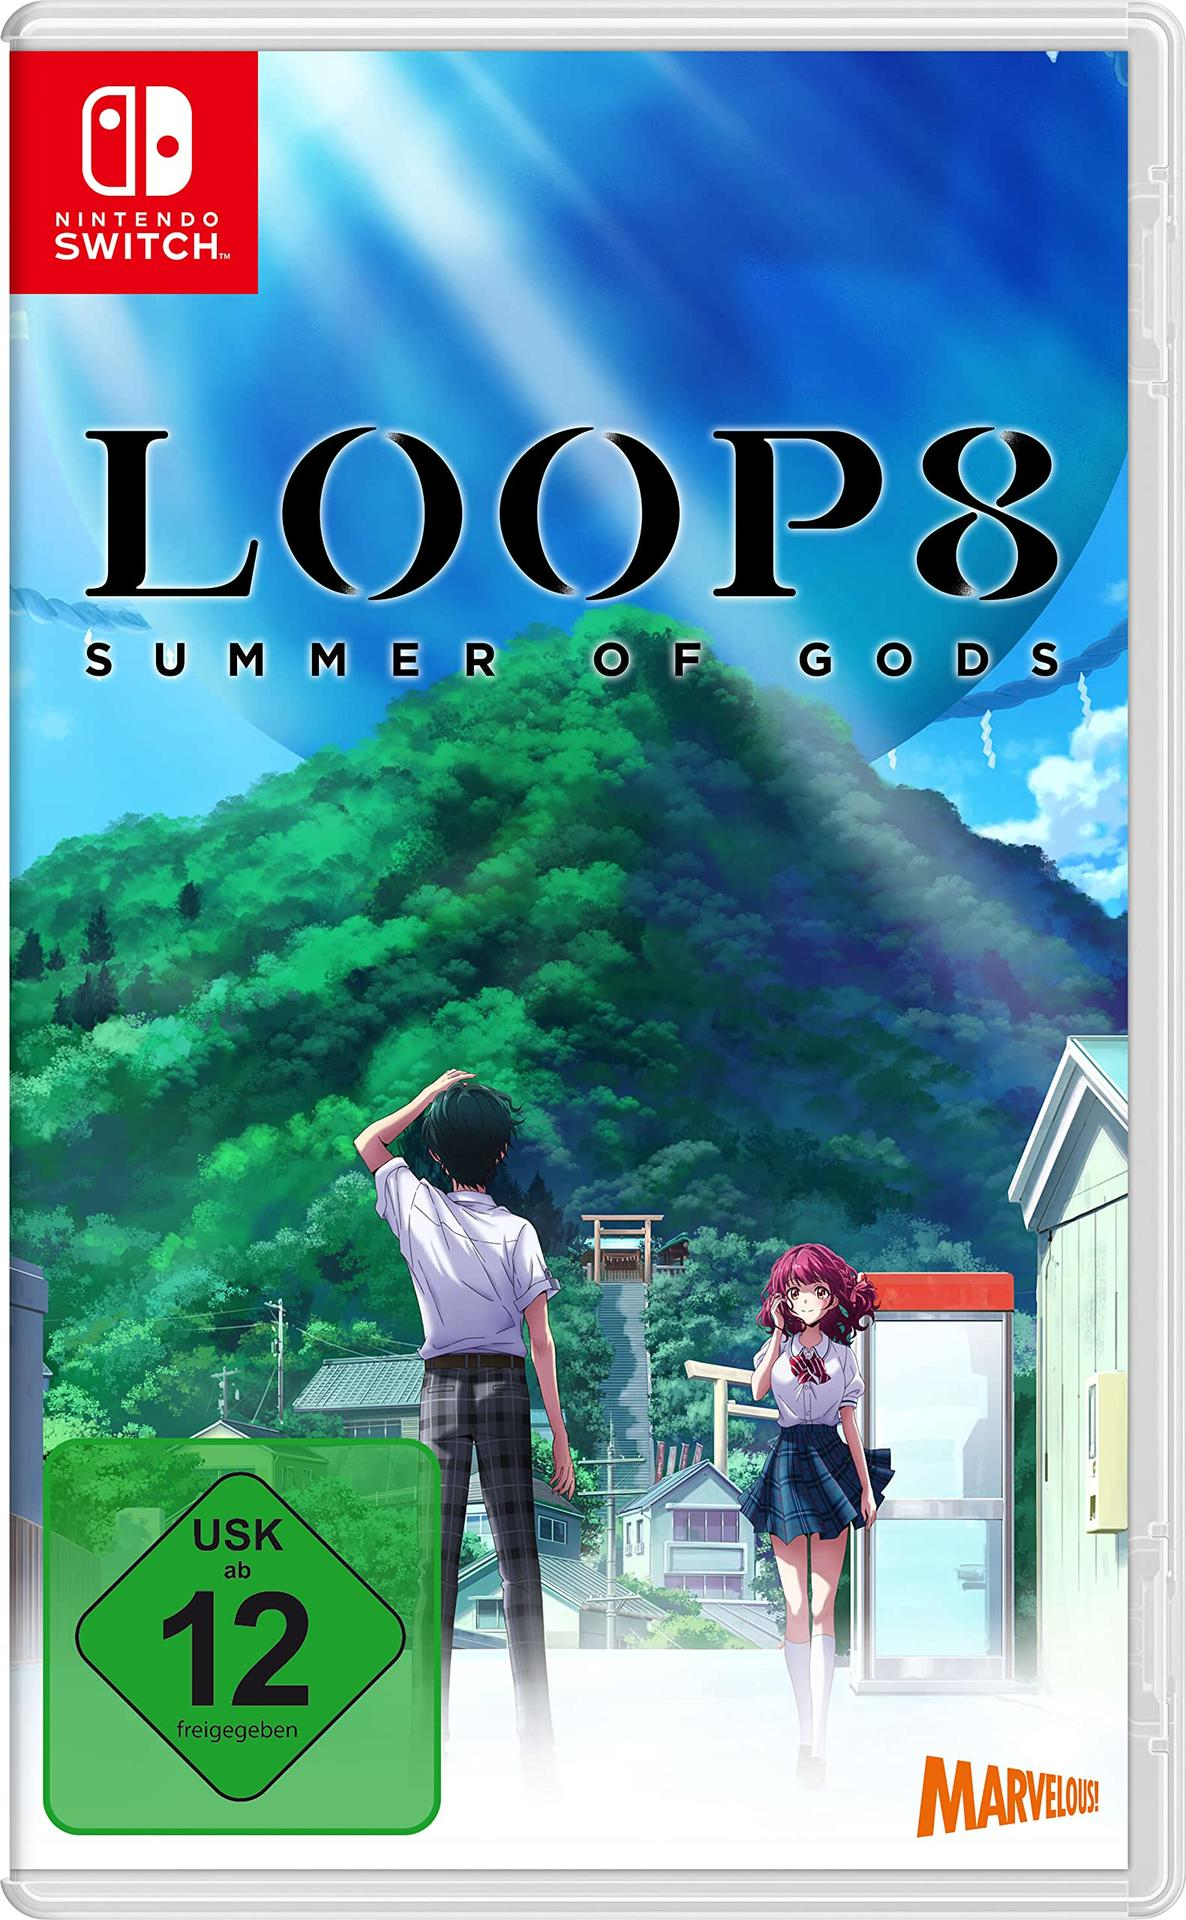 Switch] Loop8: Summer [Nintendo Gods of -